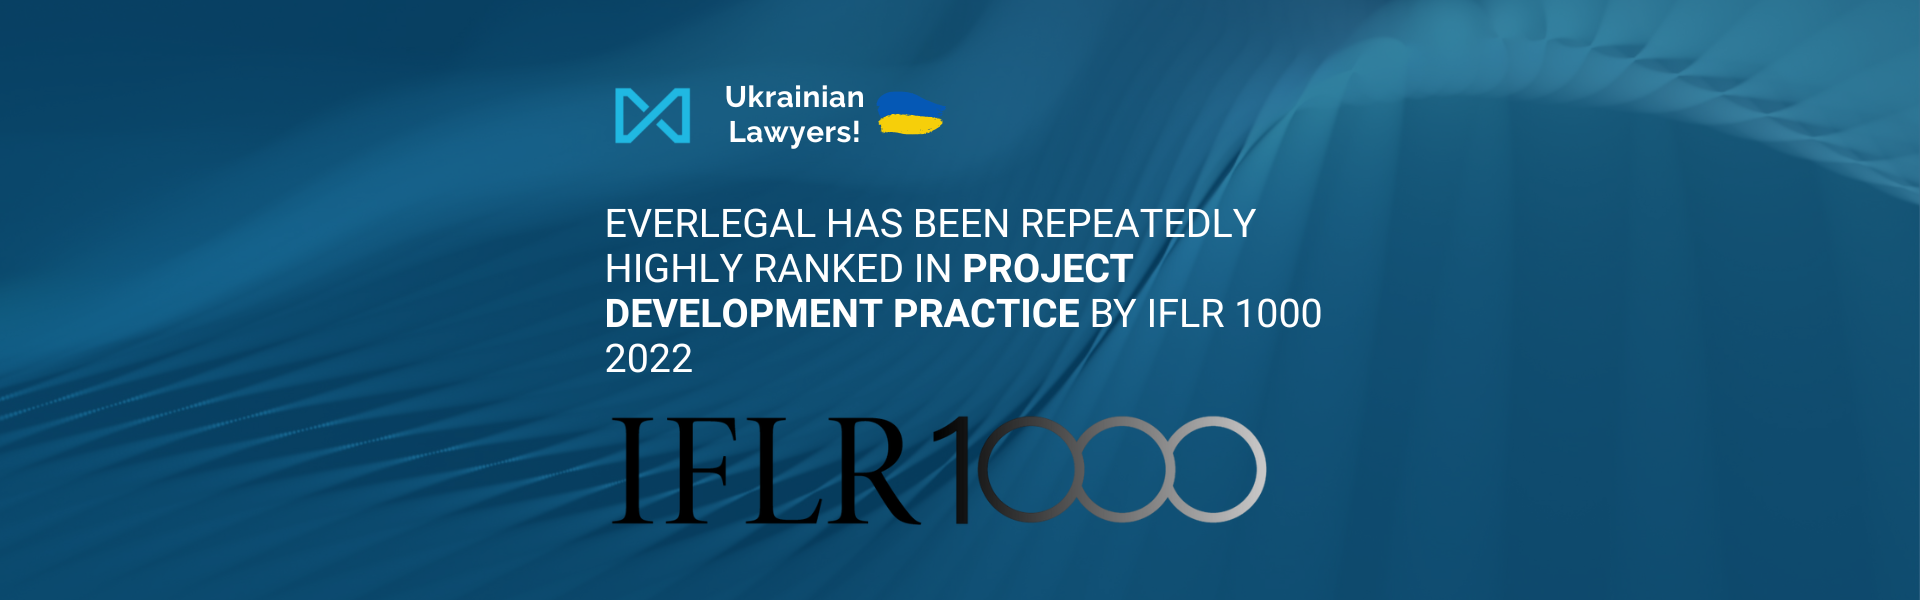 Укрїнська юридична фірма EVERLEGAL отримала високу відзнаку від міжнародного рейтингу IFLR1000 2022